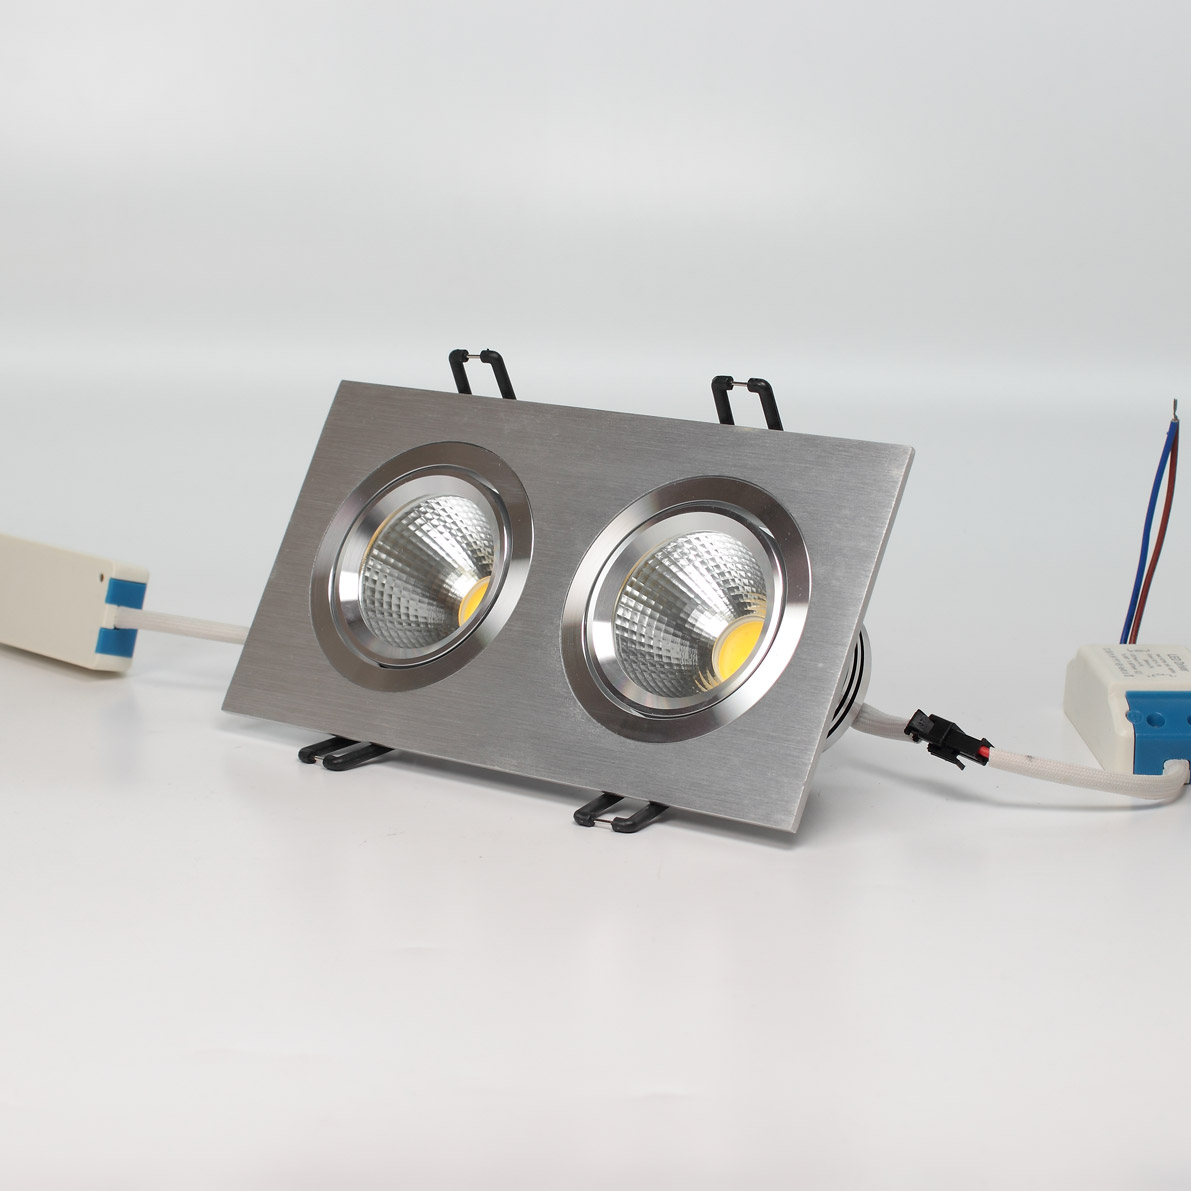 Светодиодные светильники Светодиодный светильник встраиваемый 99.2 series silver housing BW11 (10W,220V,day white)